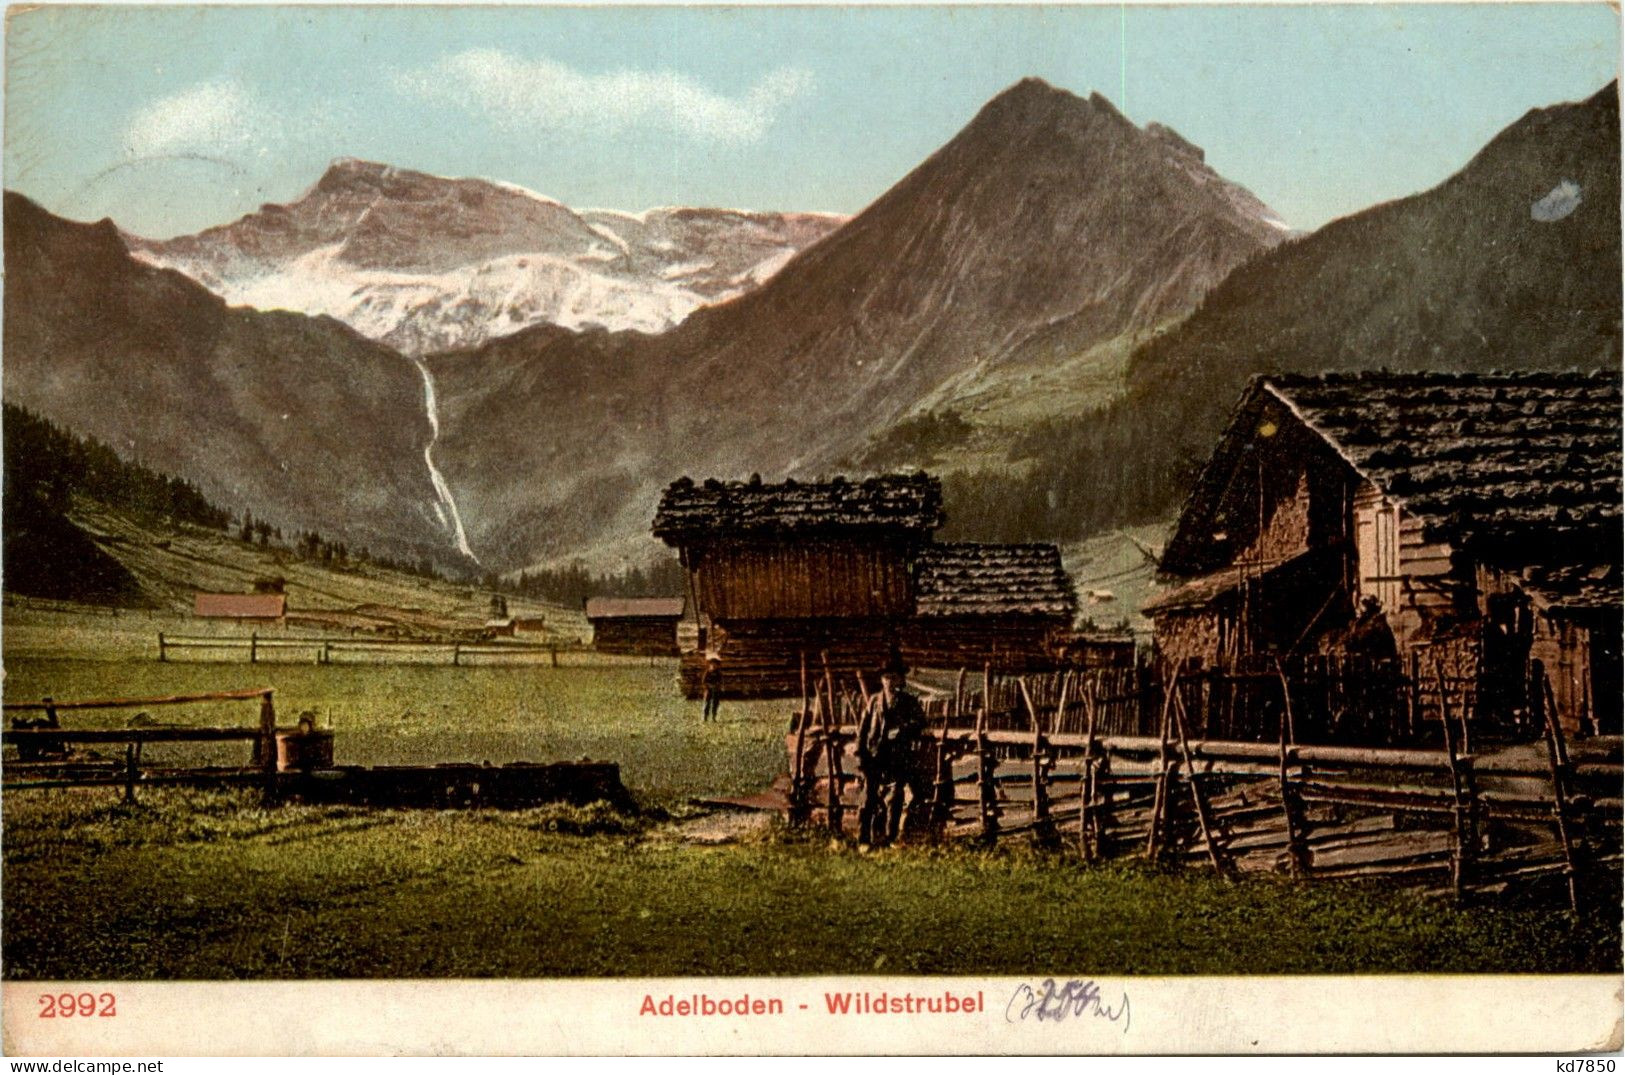 Adelboden - Wildstrubel - Adelboden